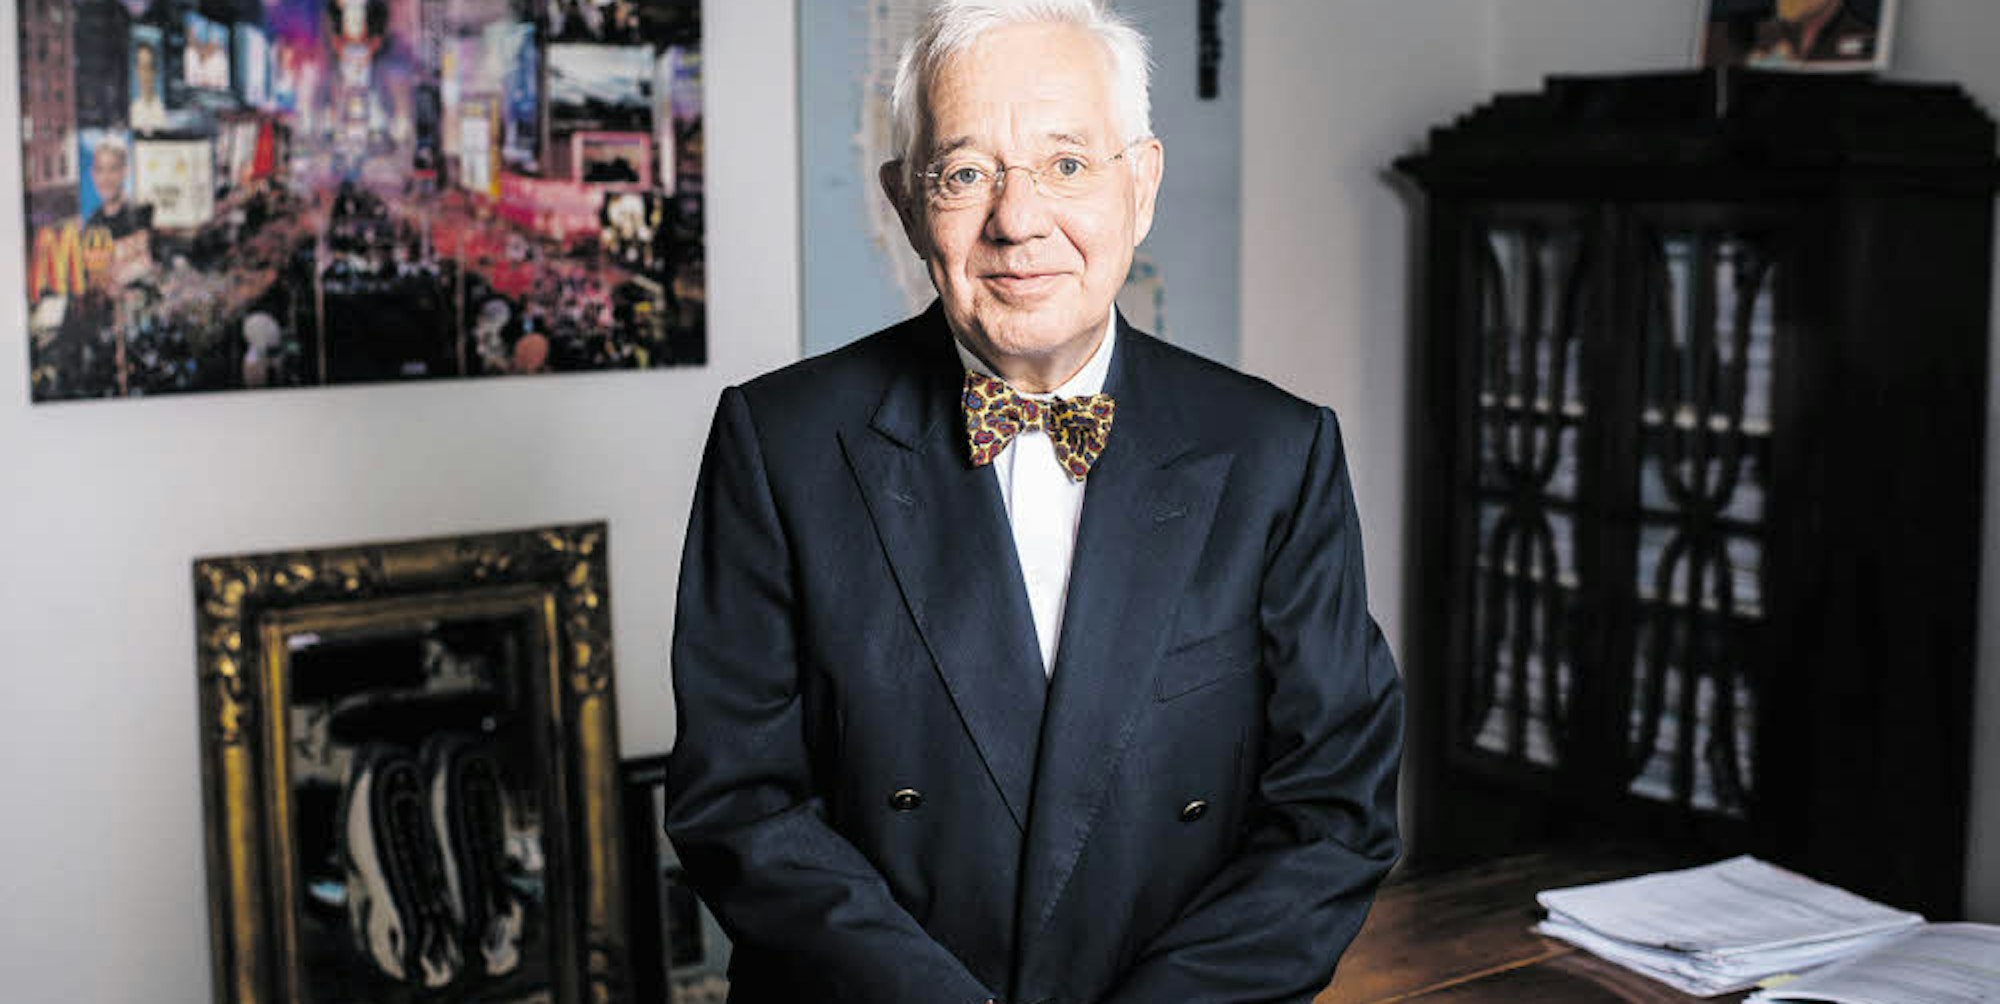 Mann mit Markenzeichen: Der Kölner Christoph Kahl, 64, trägt Fliege in seinem Büro in Marienburg.